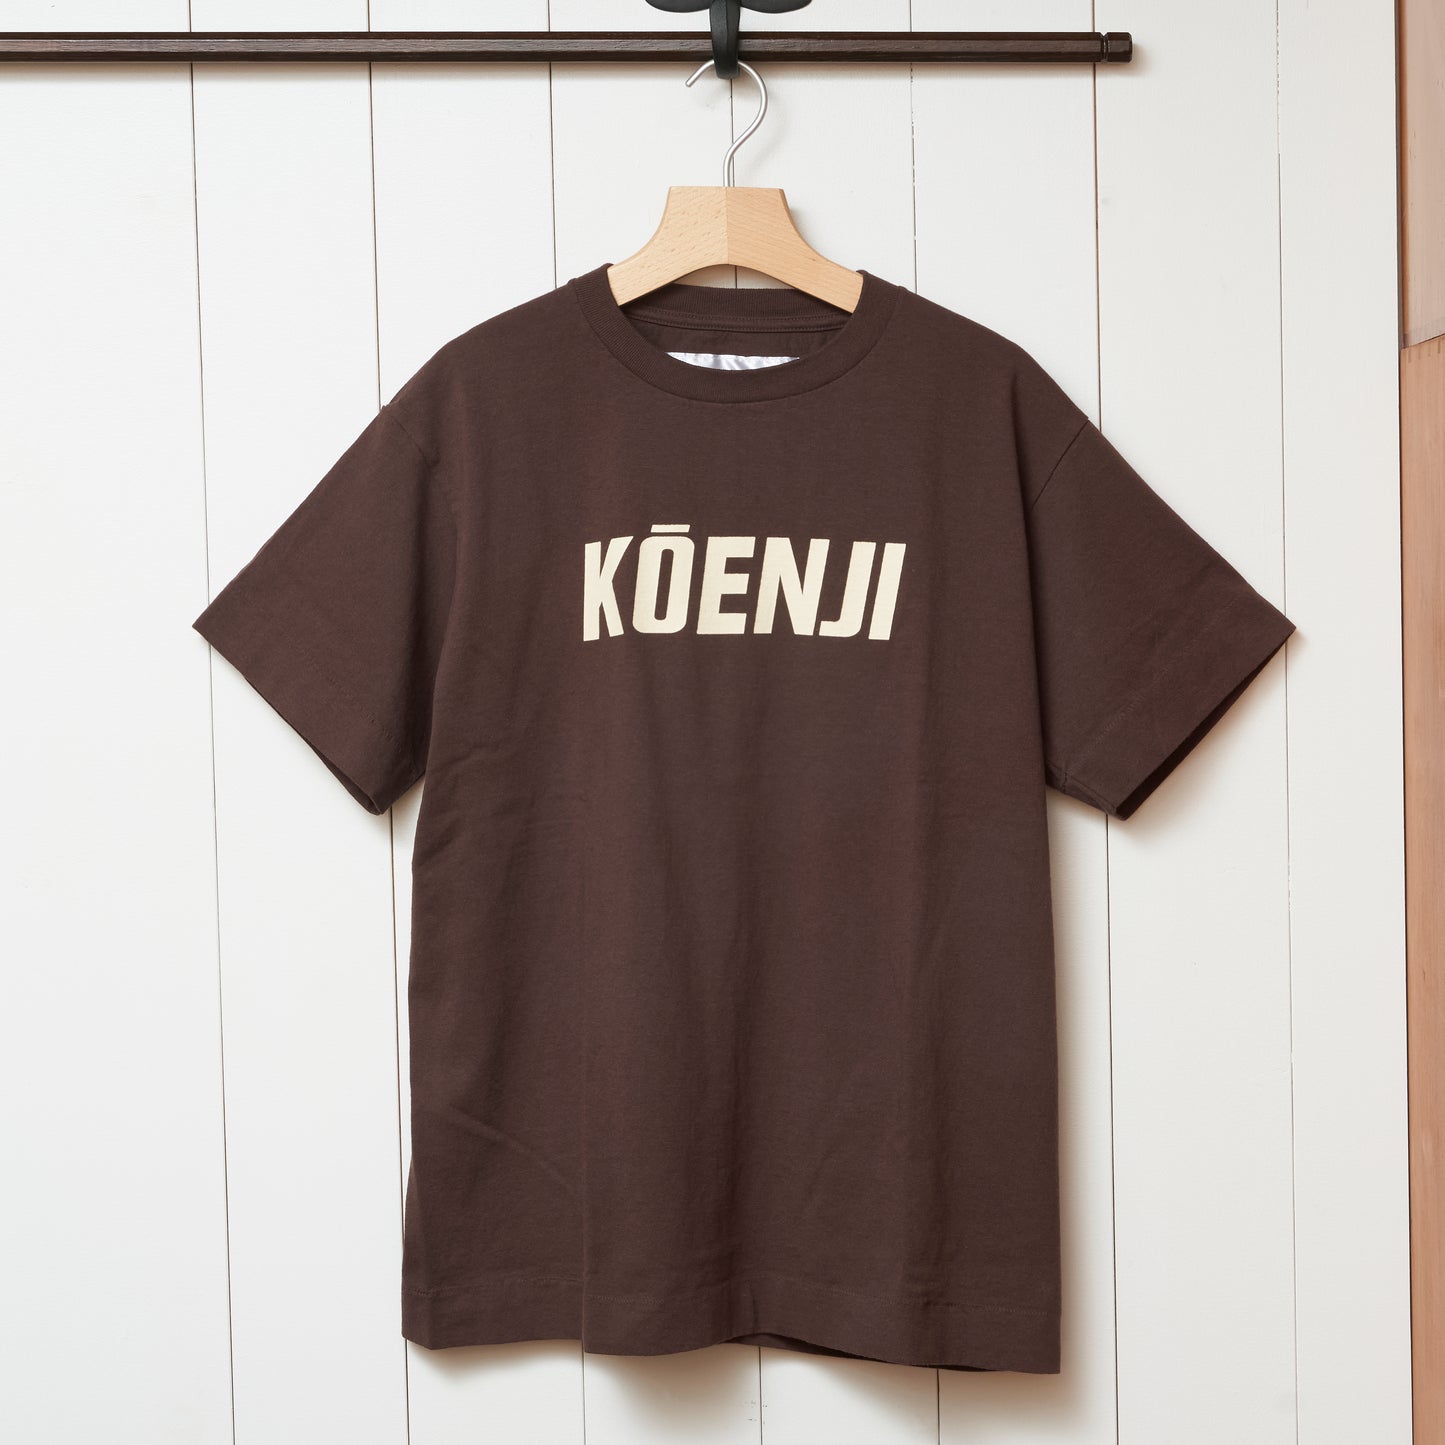 MOGI × NECESSARY or UNNECESSARY / 別注 KOENJI Tシャツ